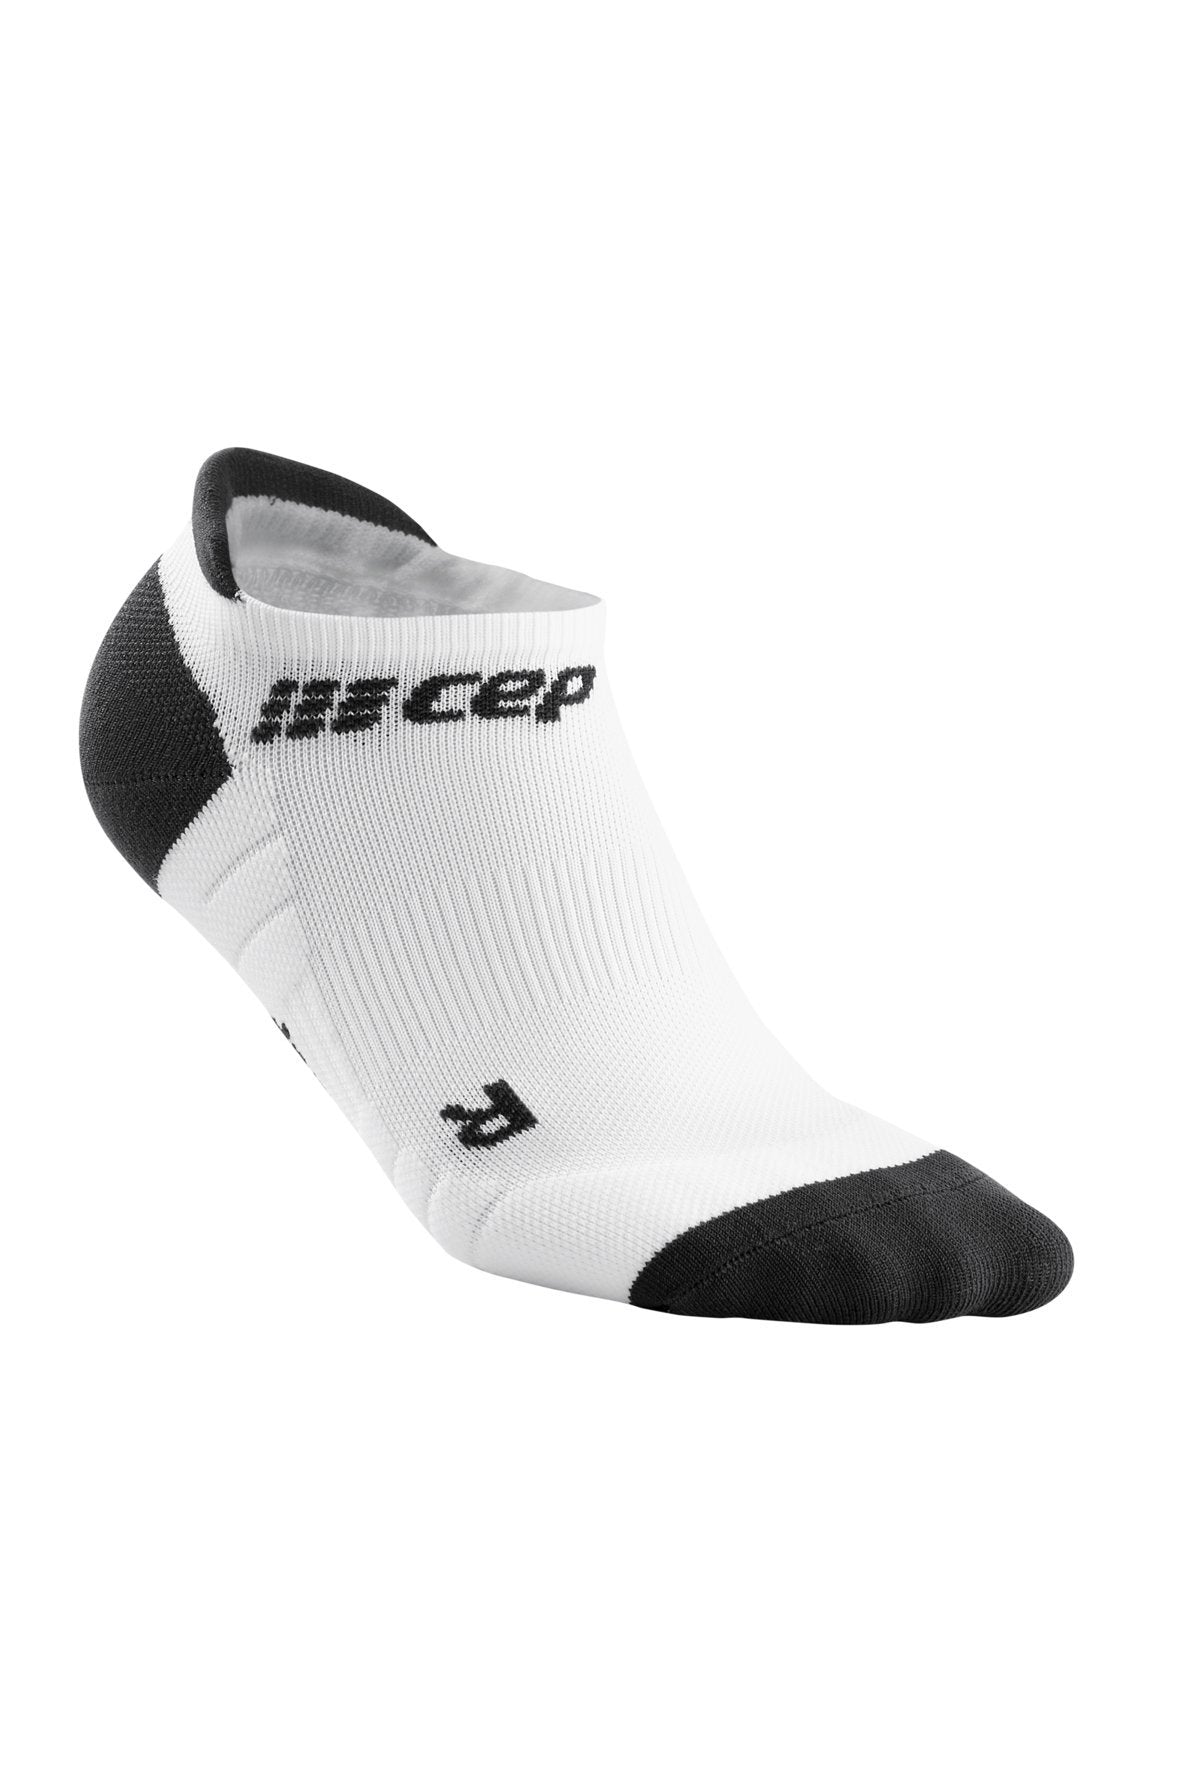 Mens CEP No Show Socks Compression 3.0